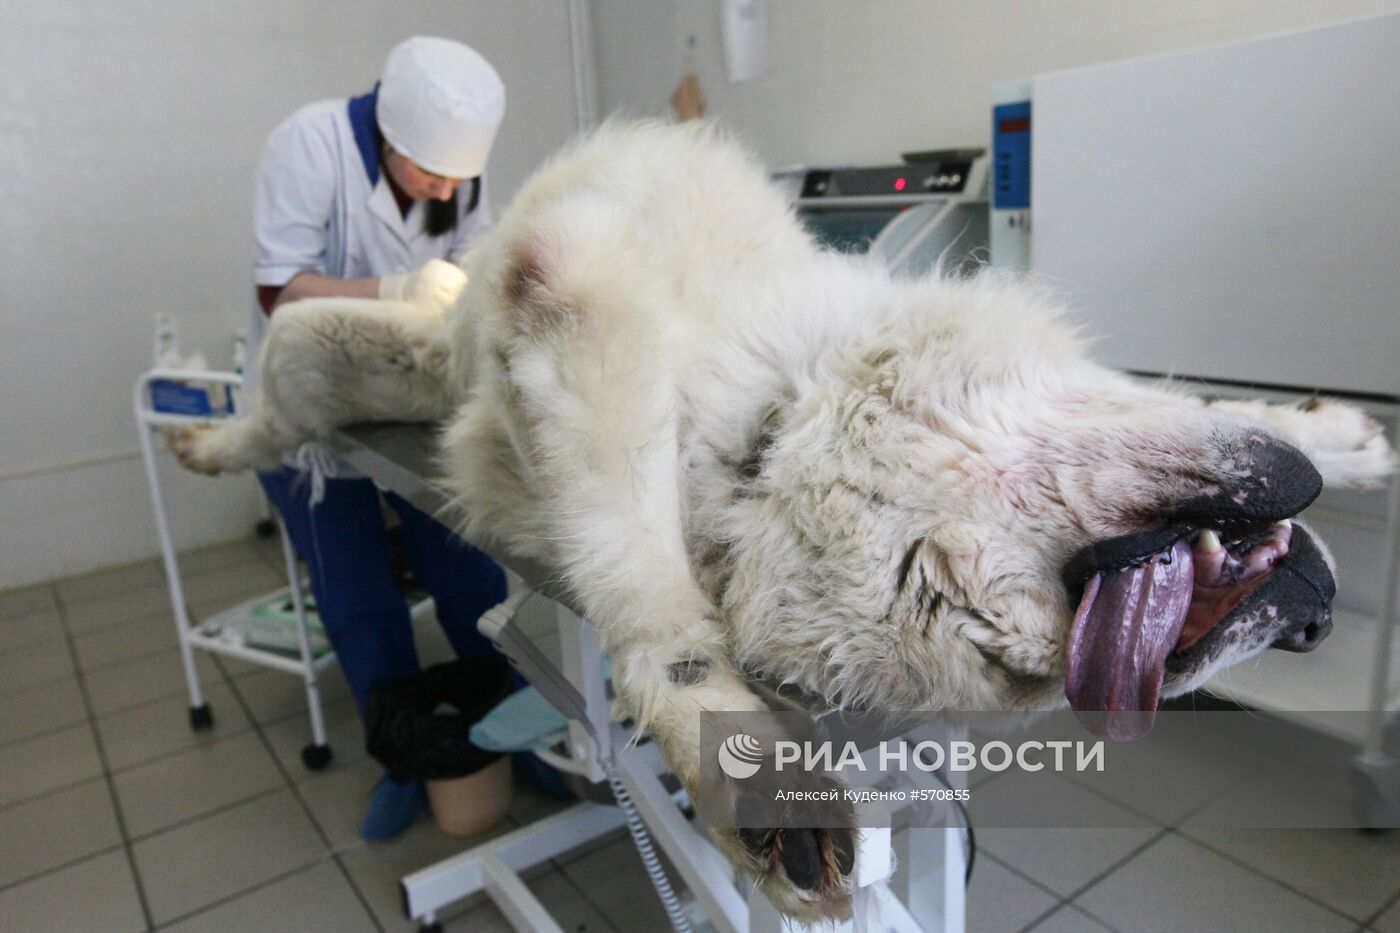 Кастрация животного в ветеринарной лечебнице